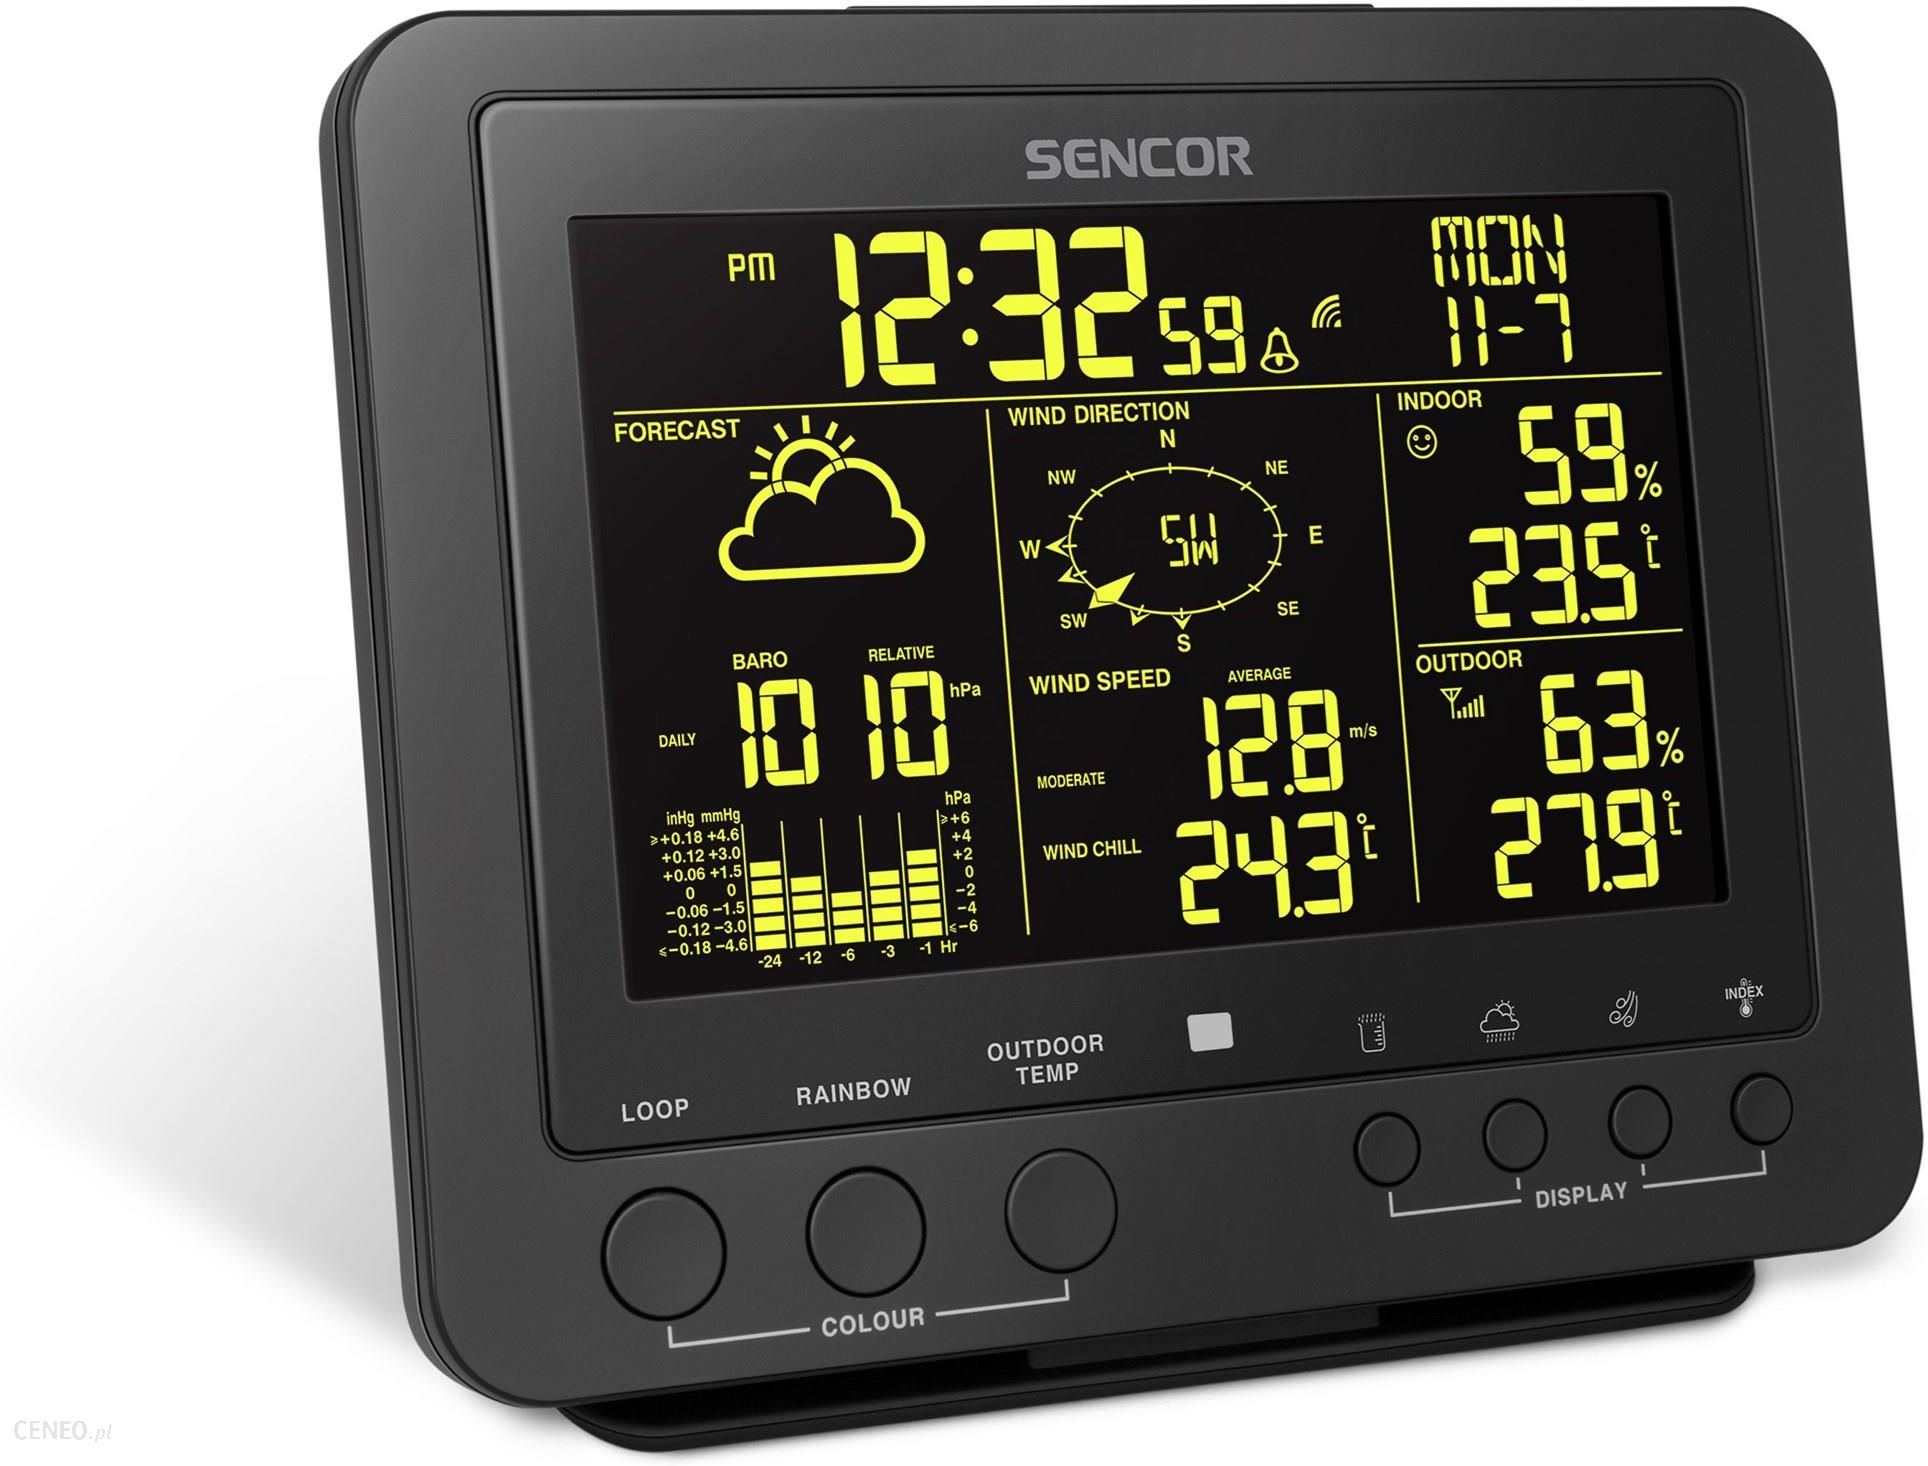  Stacja pogodowa Sencor SWS 9700